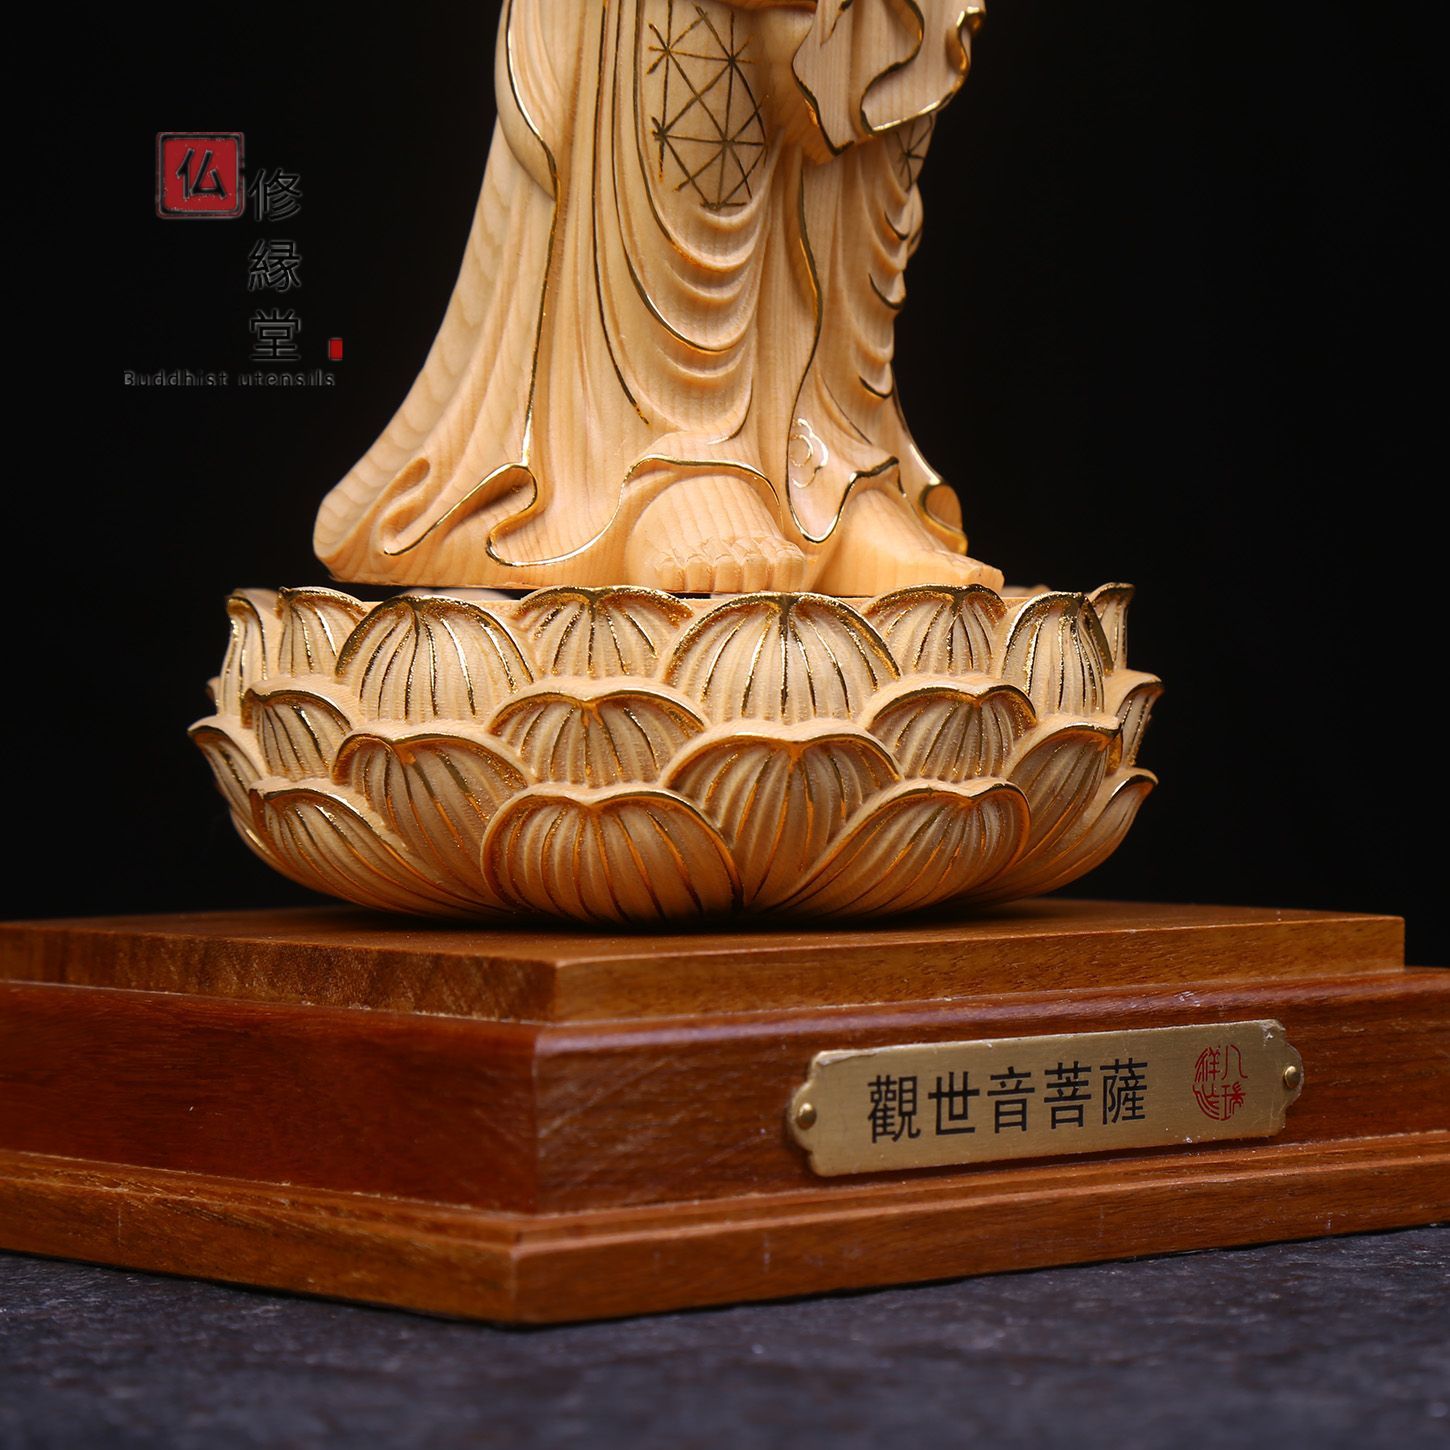 修縁堂】最高級 木彫り 仏像 観世音菩薩立像 本金 切金 彫刻 天然木檜 